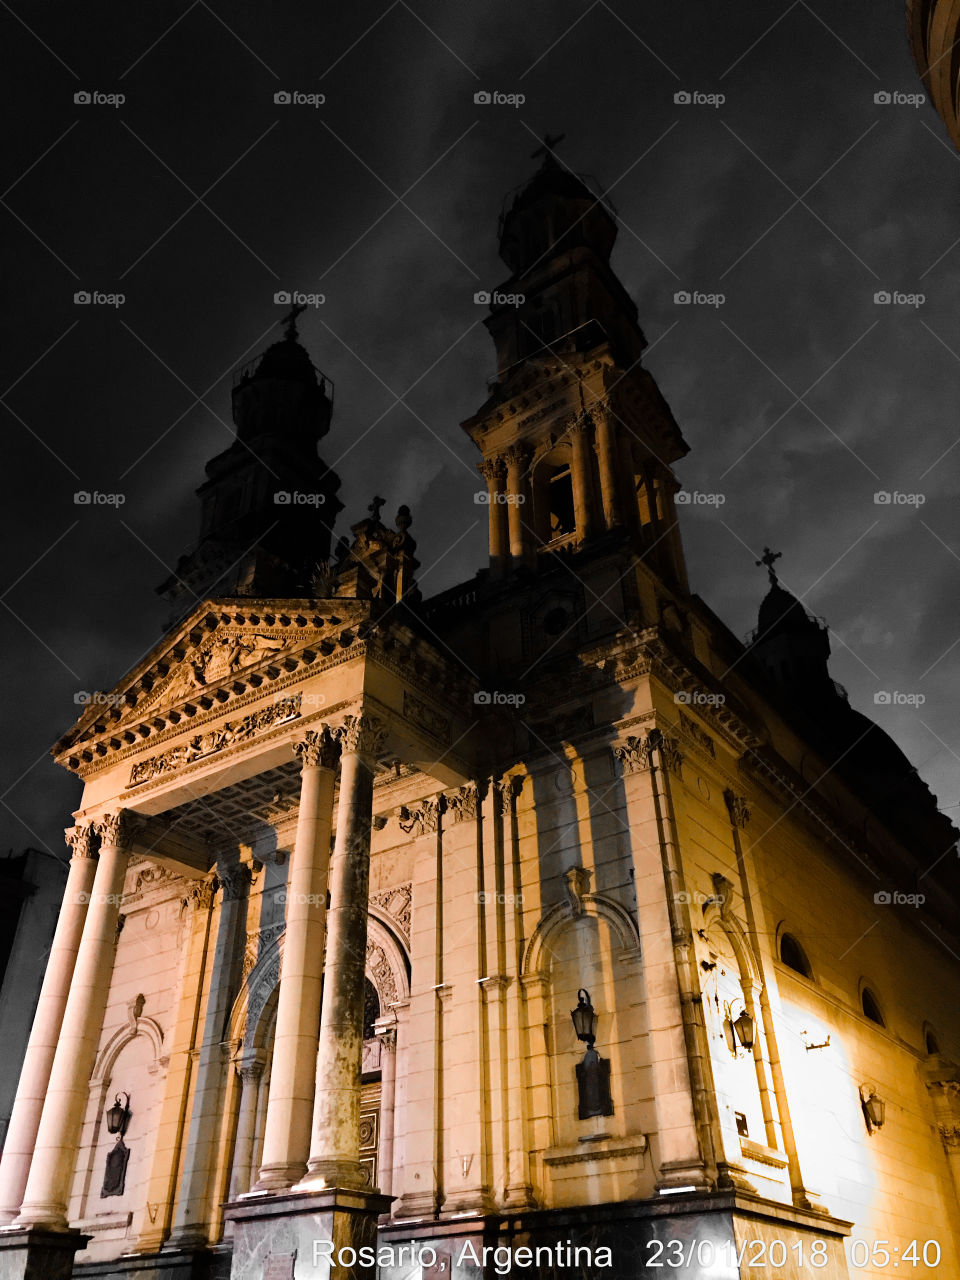 La catedral de Rosario es uno de los símbolos católicos más importantes e impactantes no sólo de la zona sino del país.. 